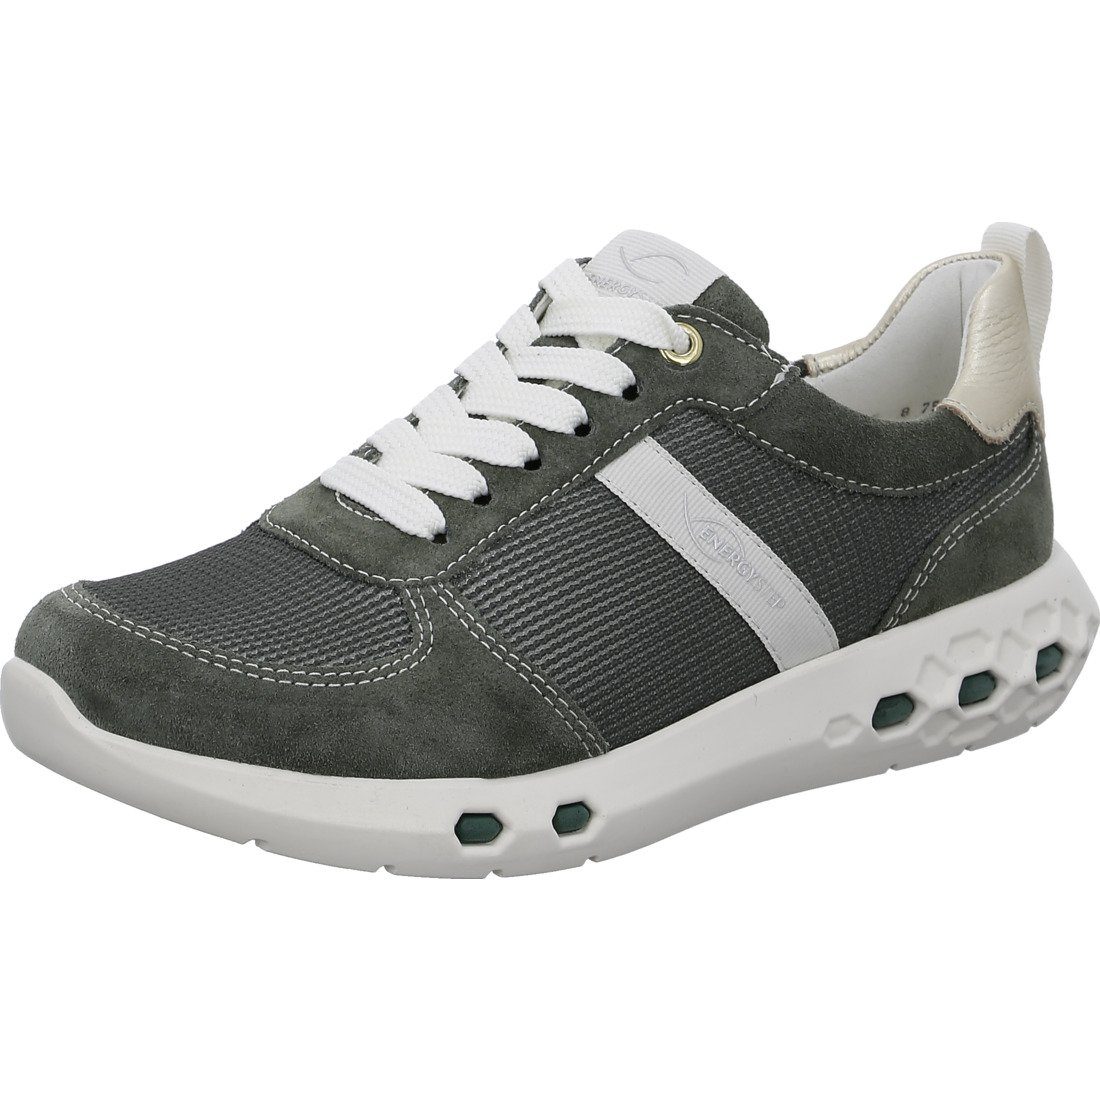 Ara Ara Schuhe, Sneaker Jumper - Materialmix Damen Sneaker grün 047857